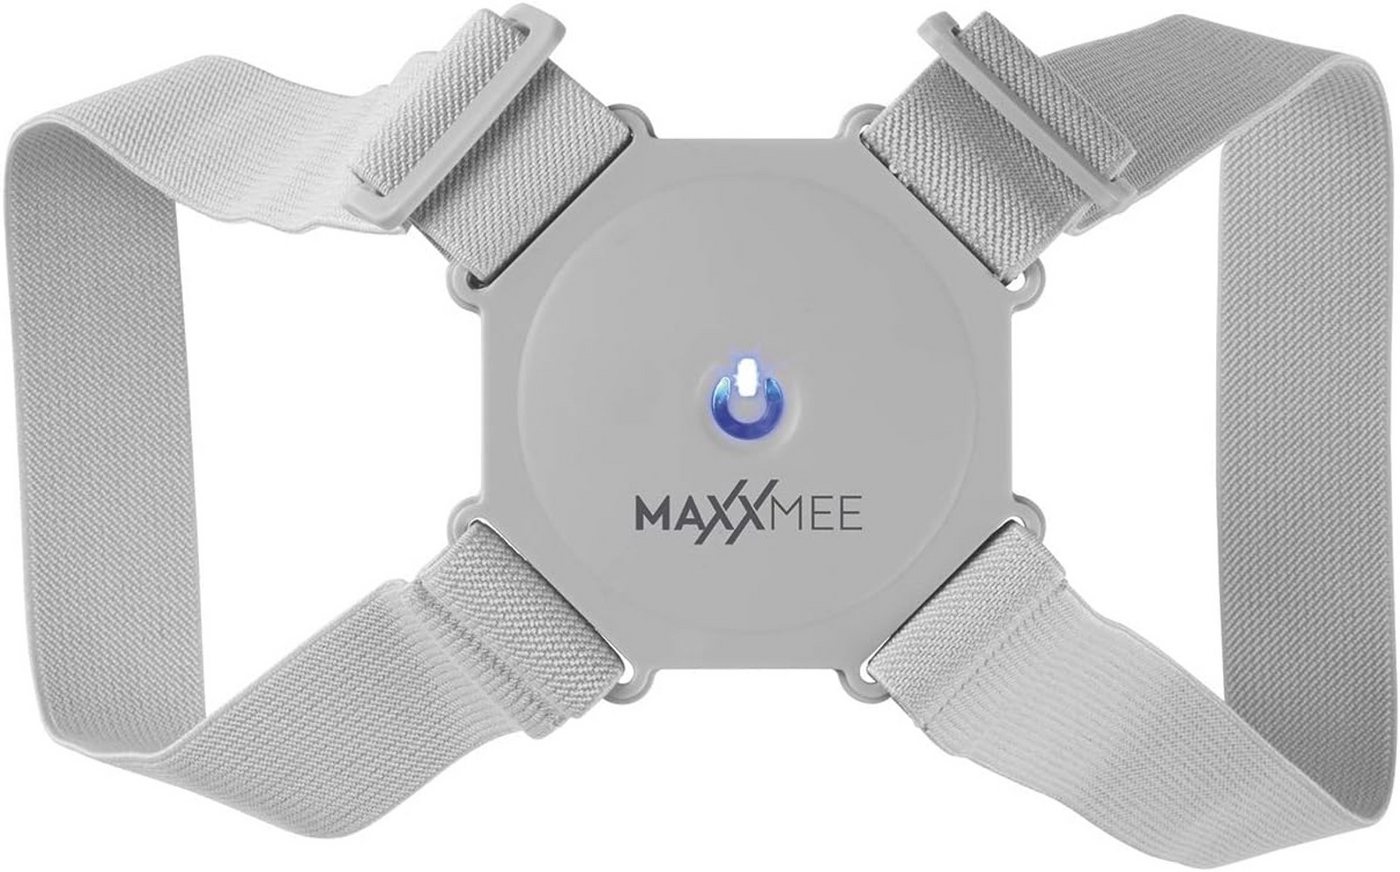 MAXXMEE Rückenbandage Rückenkorrektor - Gerader Rücken & mehr Stabilität - hellgrau MAXXMEE. von MAXXMEE